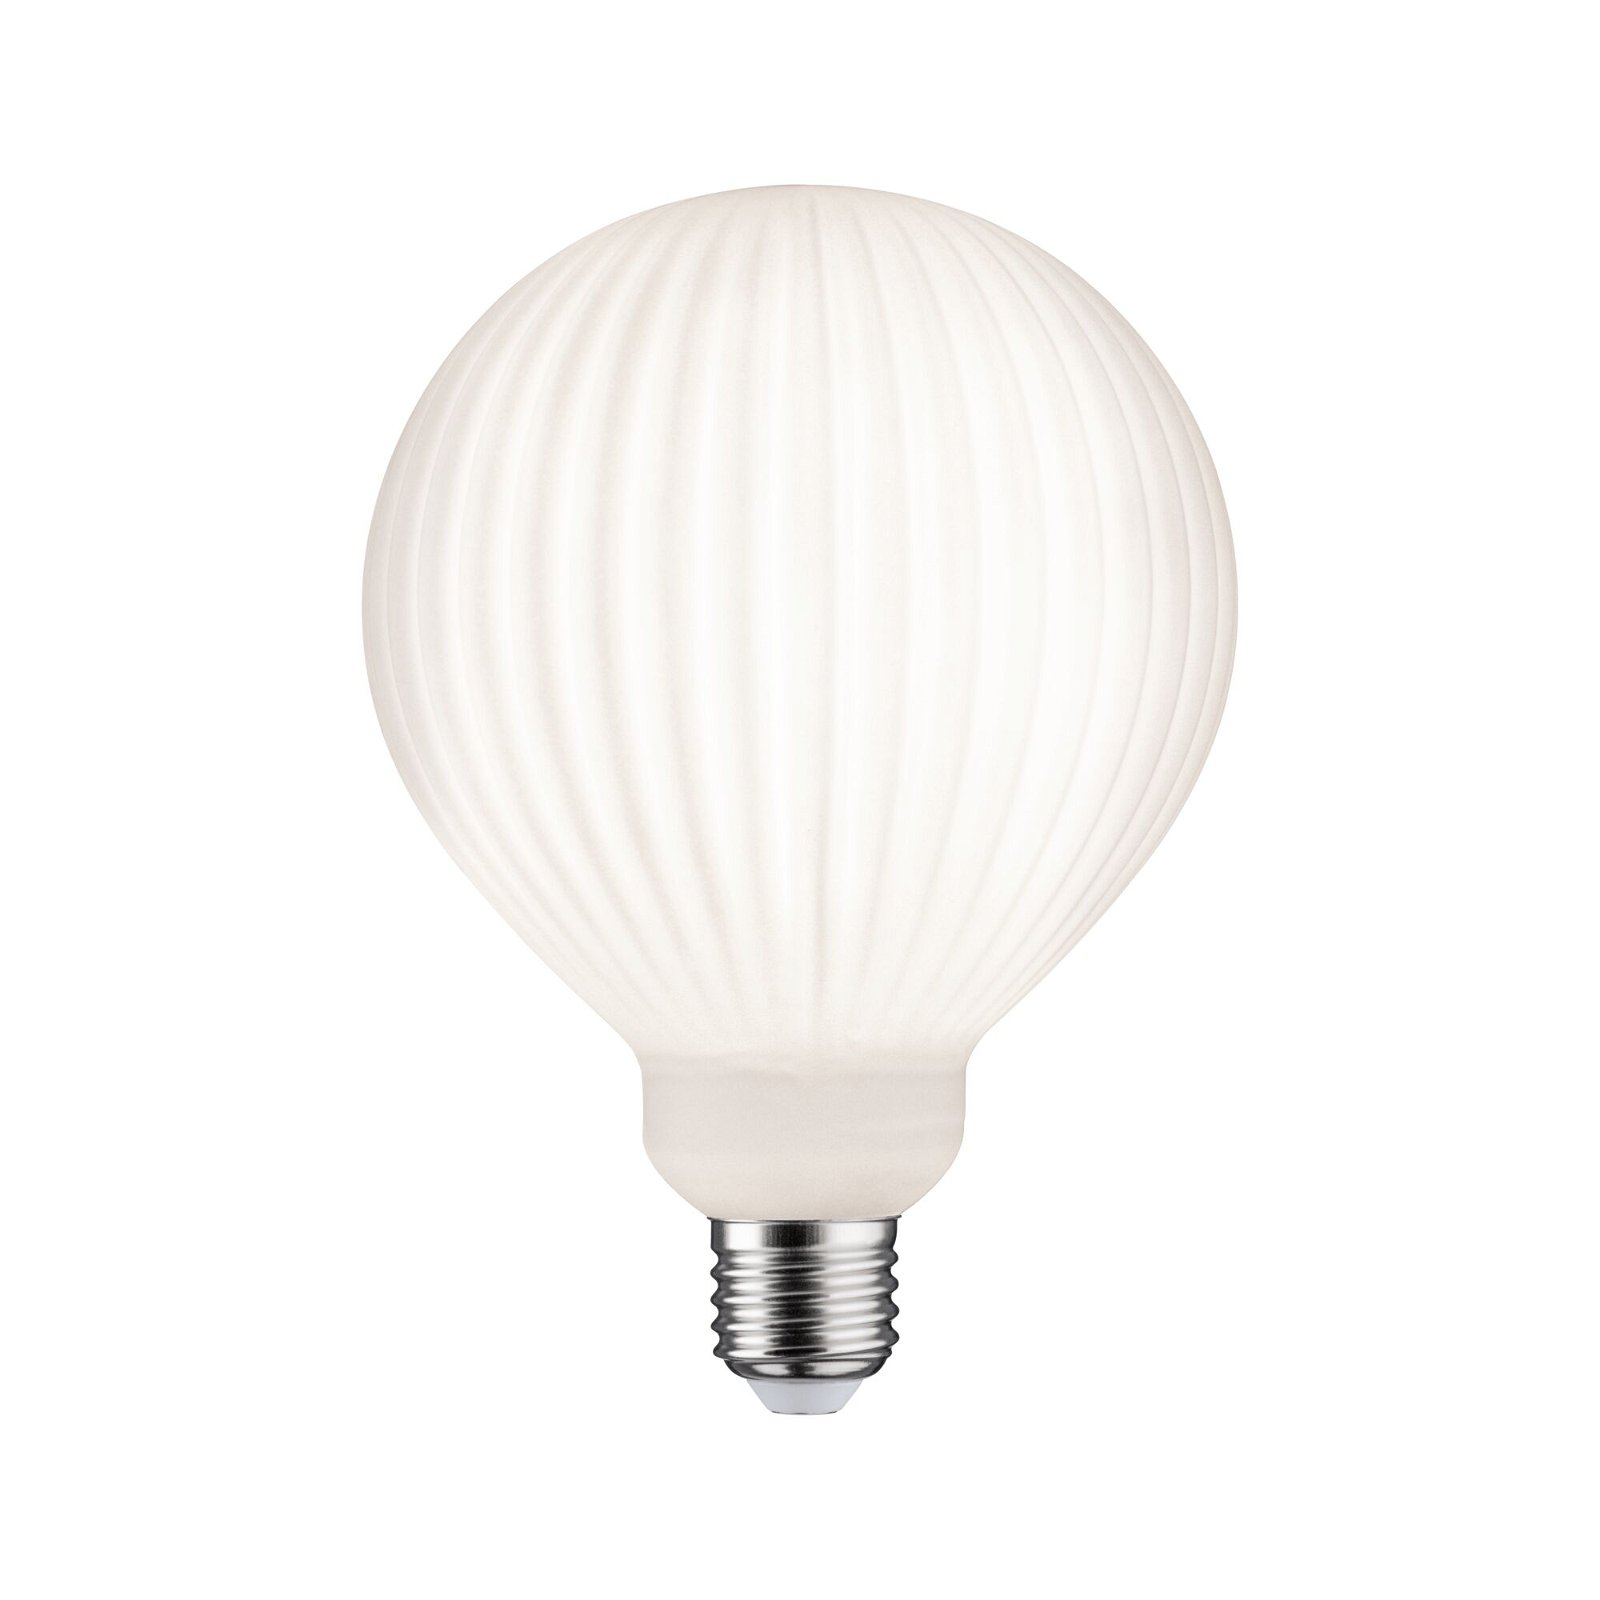 White Lampion Filament 230 V Globe LED G125 E27 400lm 4,3W 3000K gradable Blanc